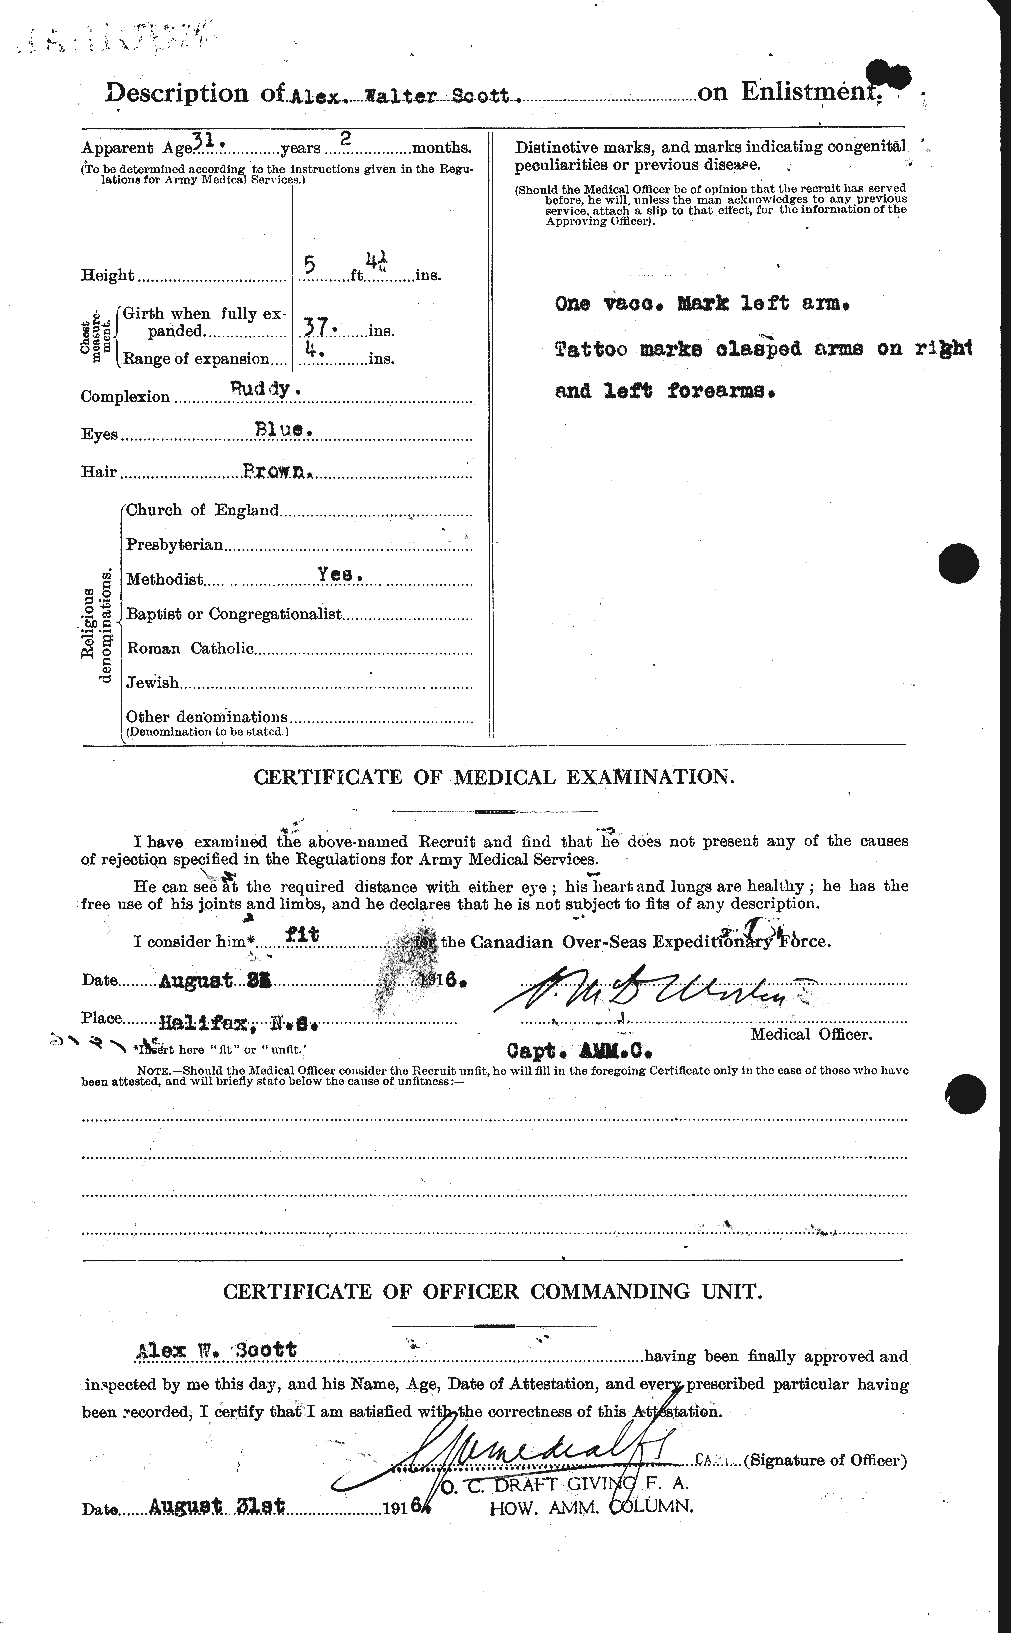 Dossiers du Personnel de la Première Guerre mondiale - CEC 086590b